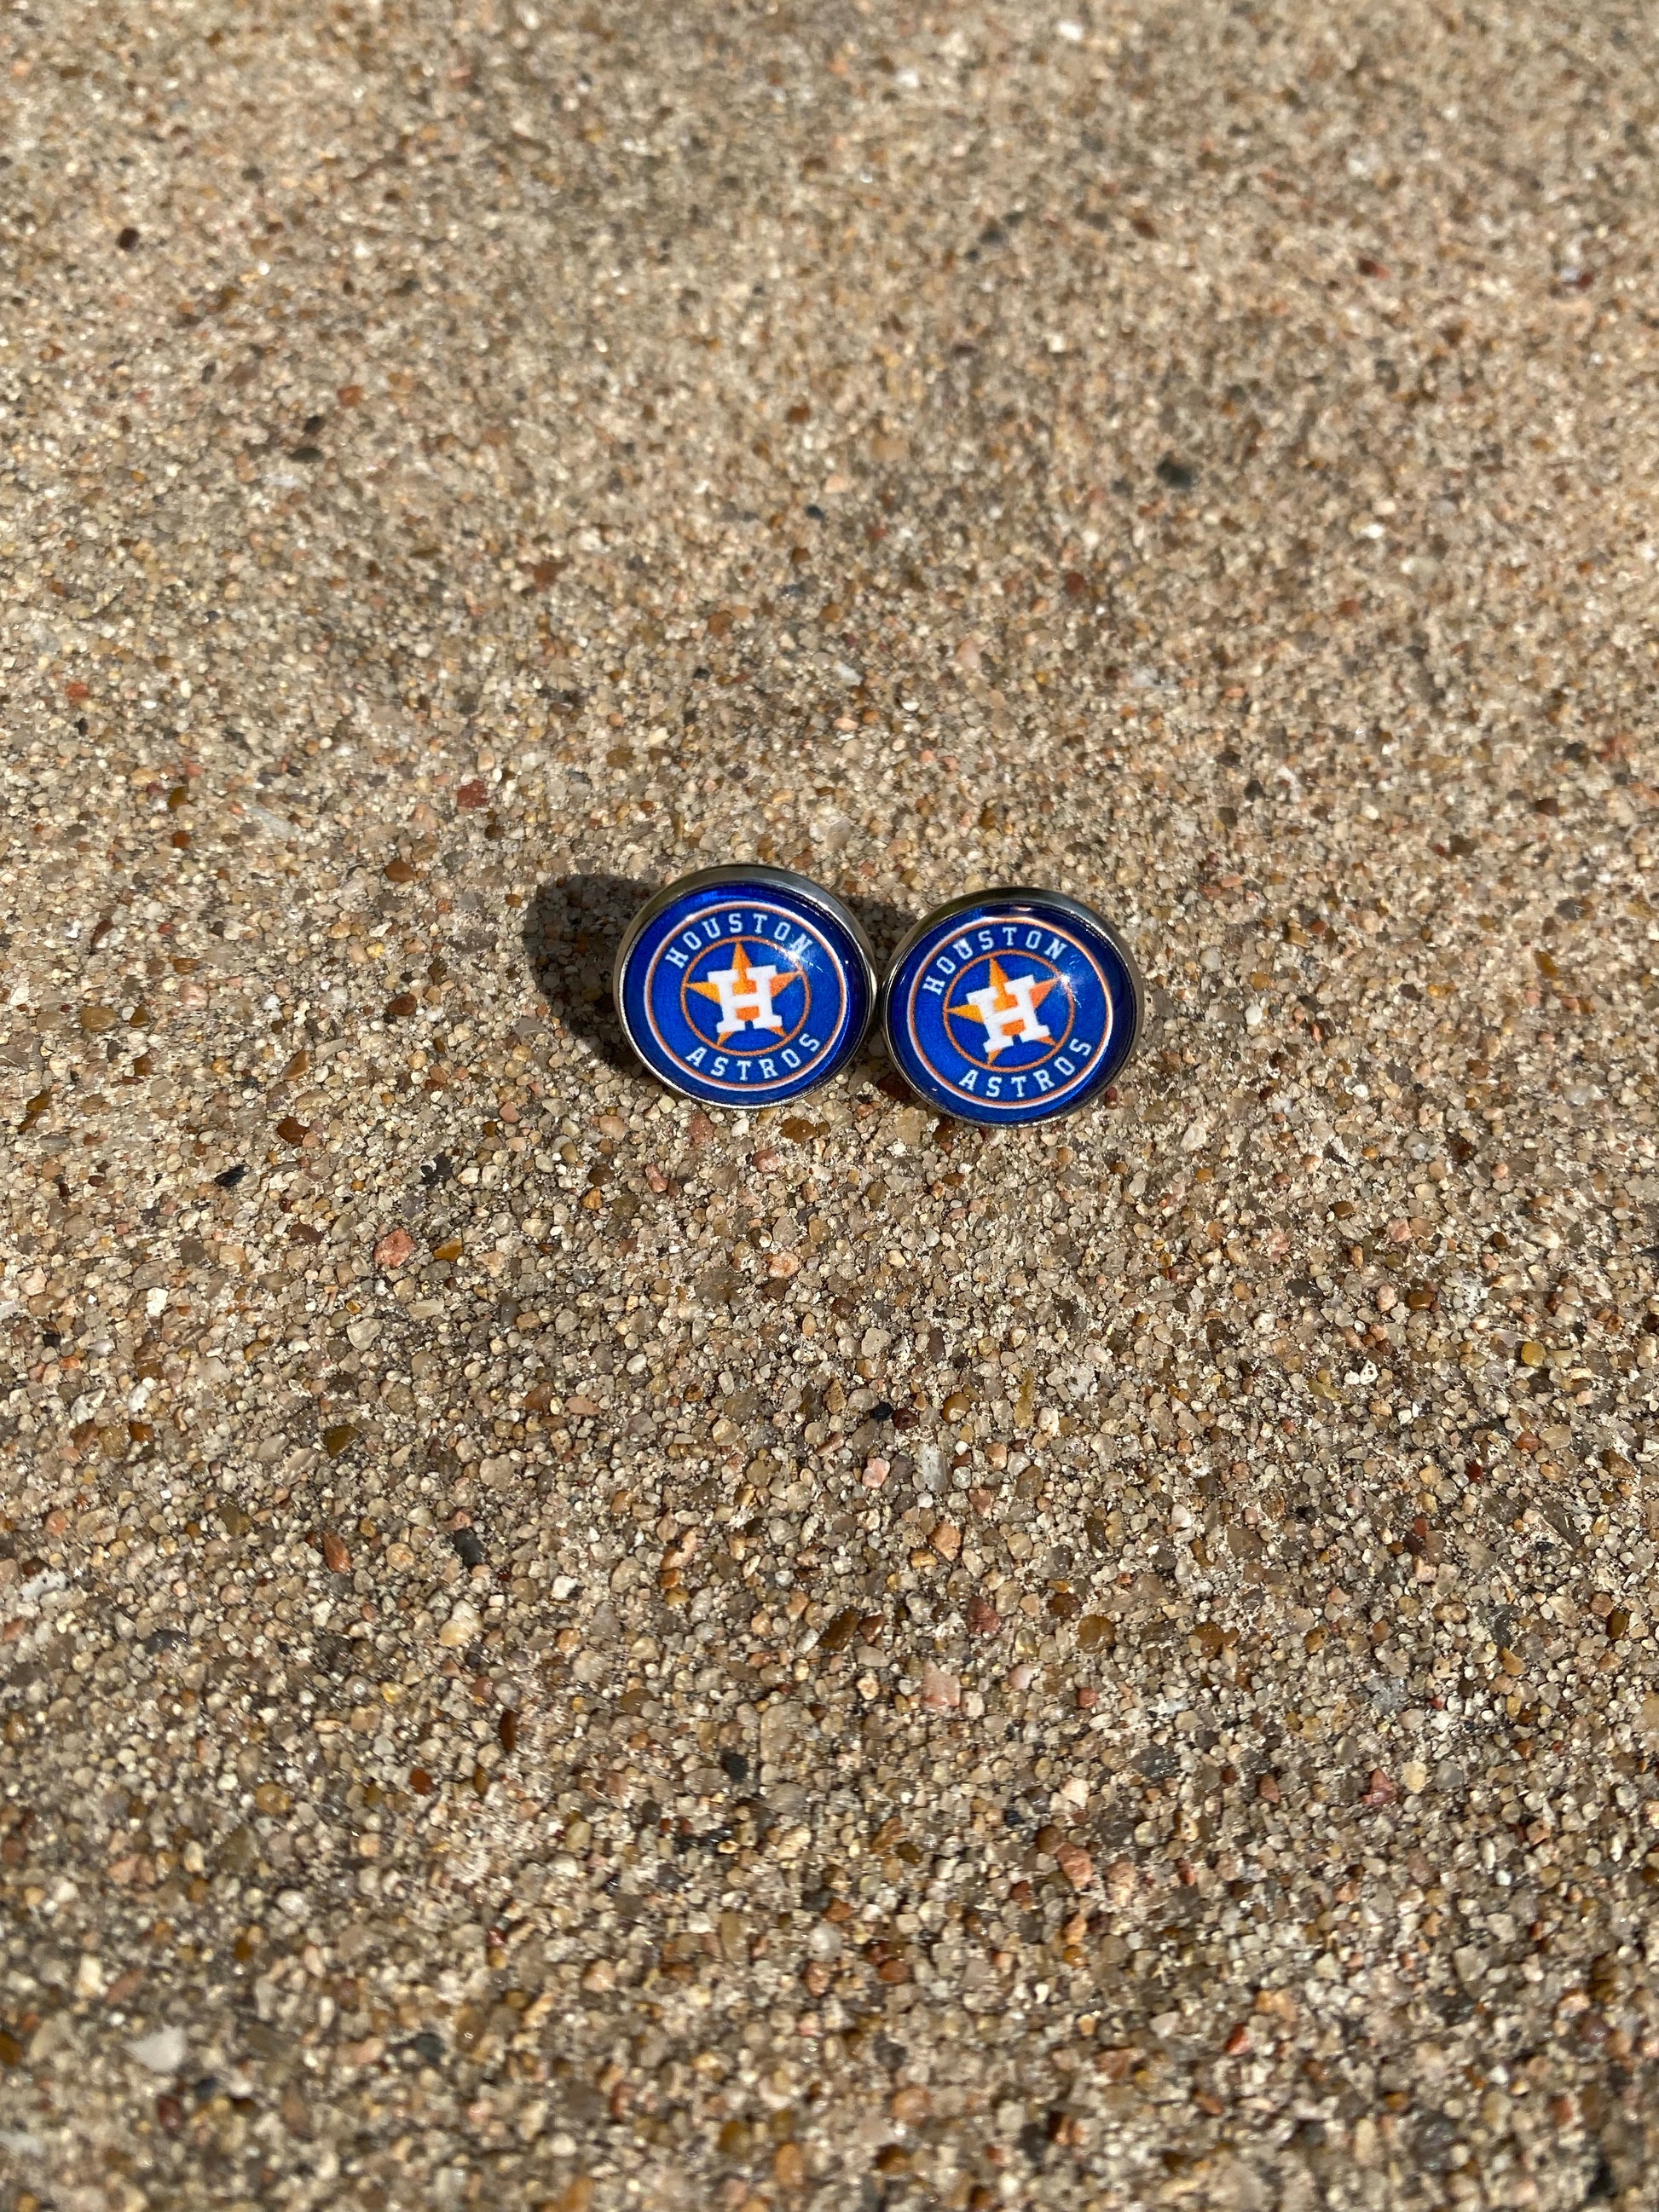 Houston Astros Stud Earrings Gift 